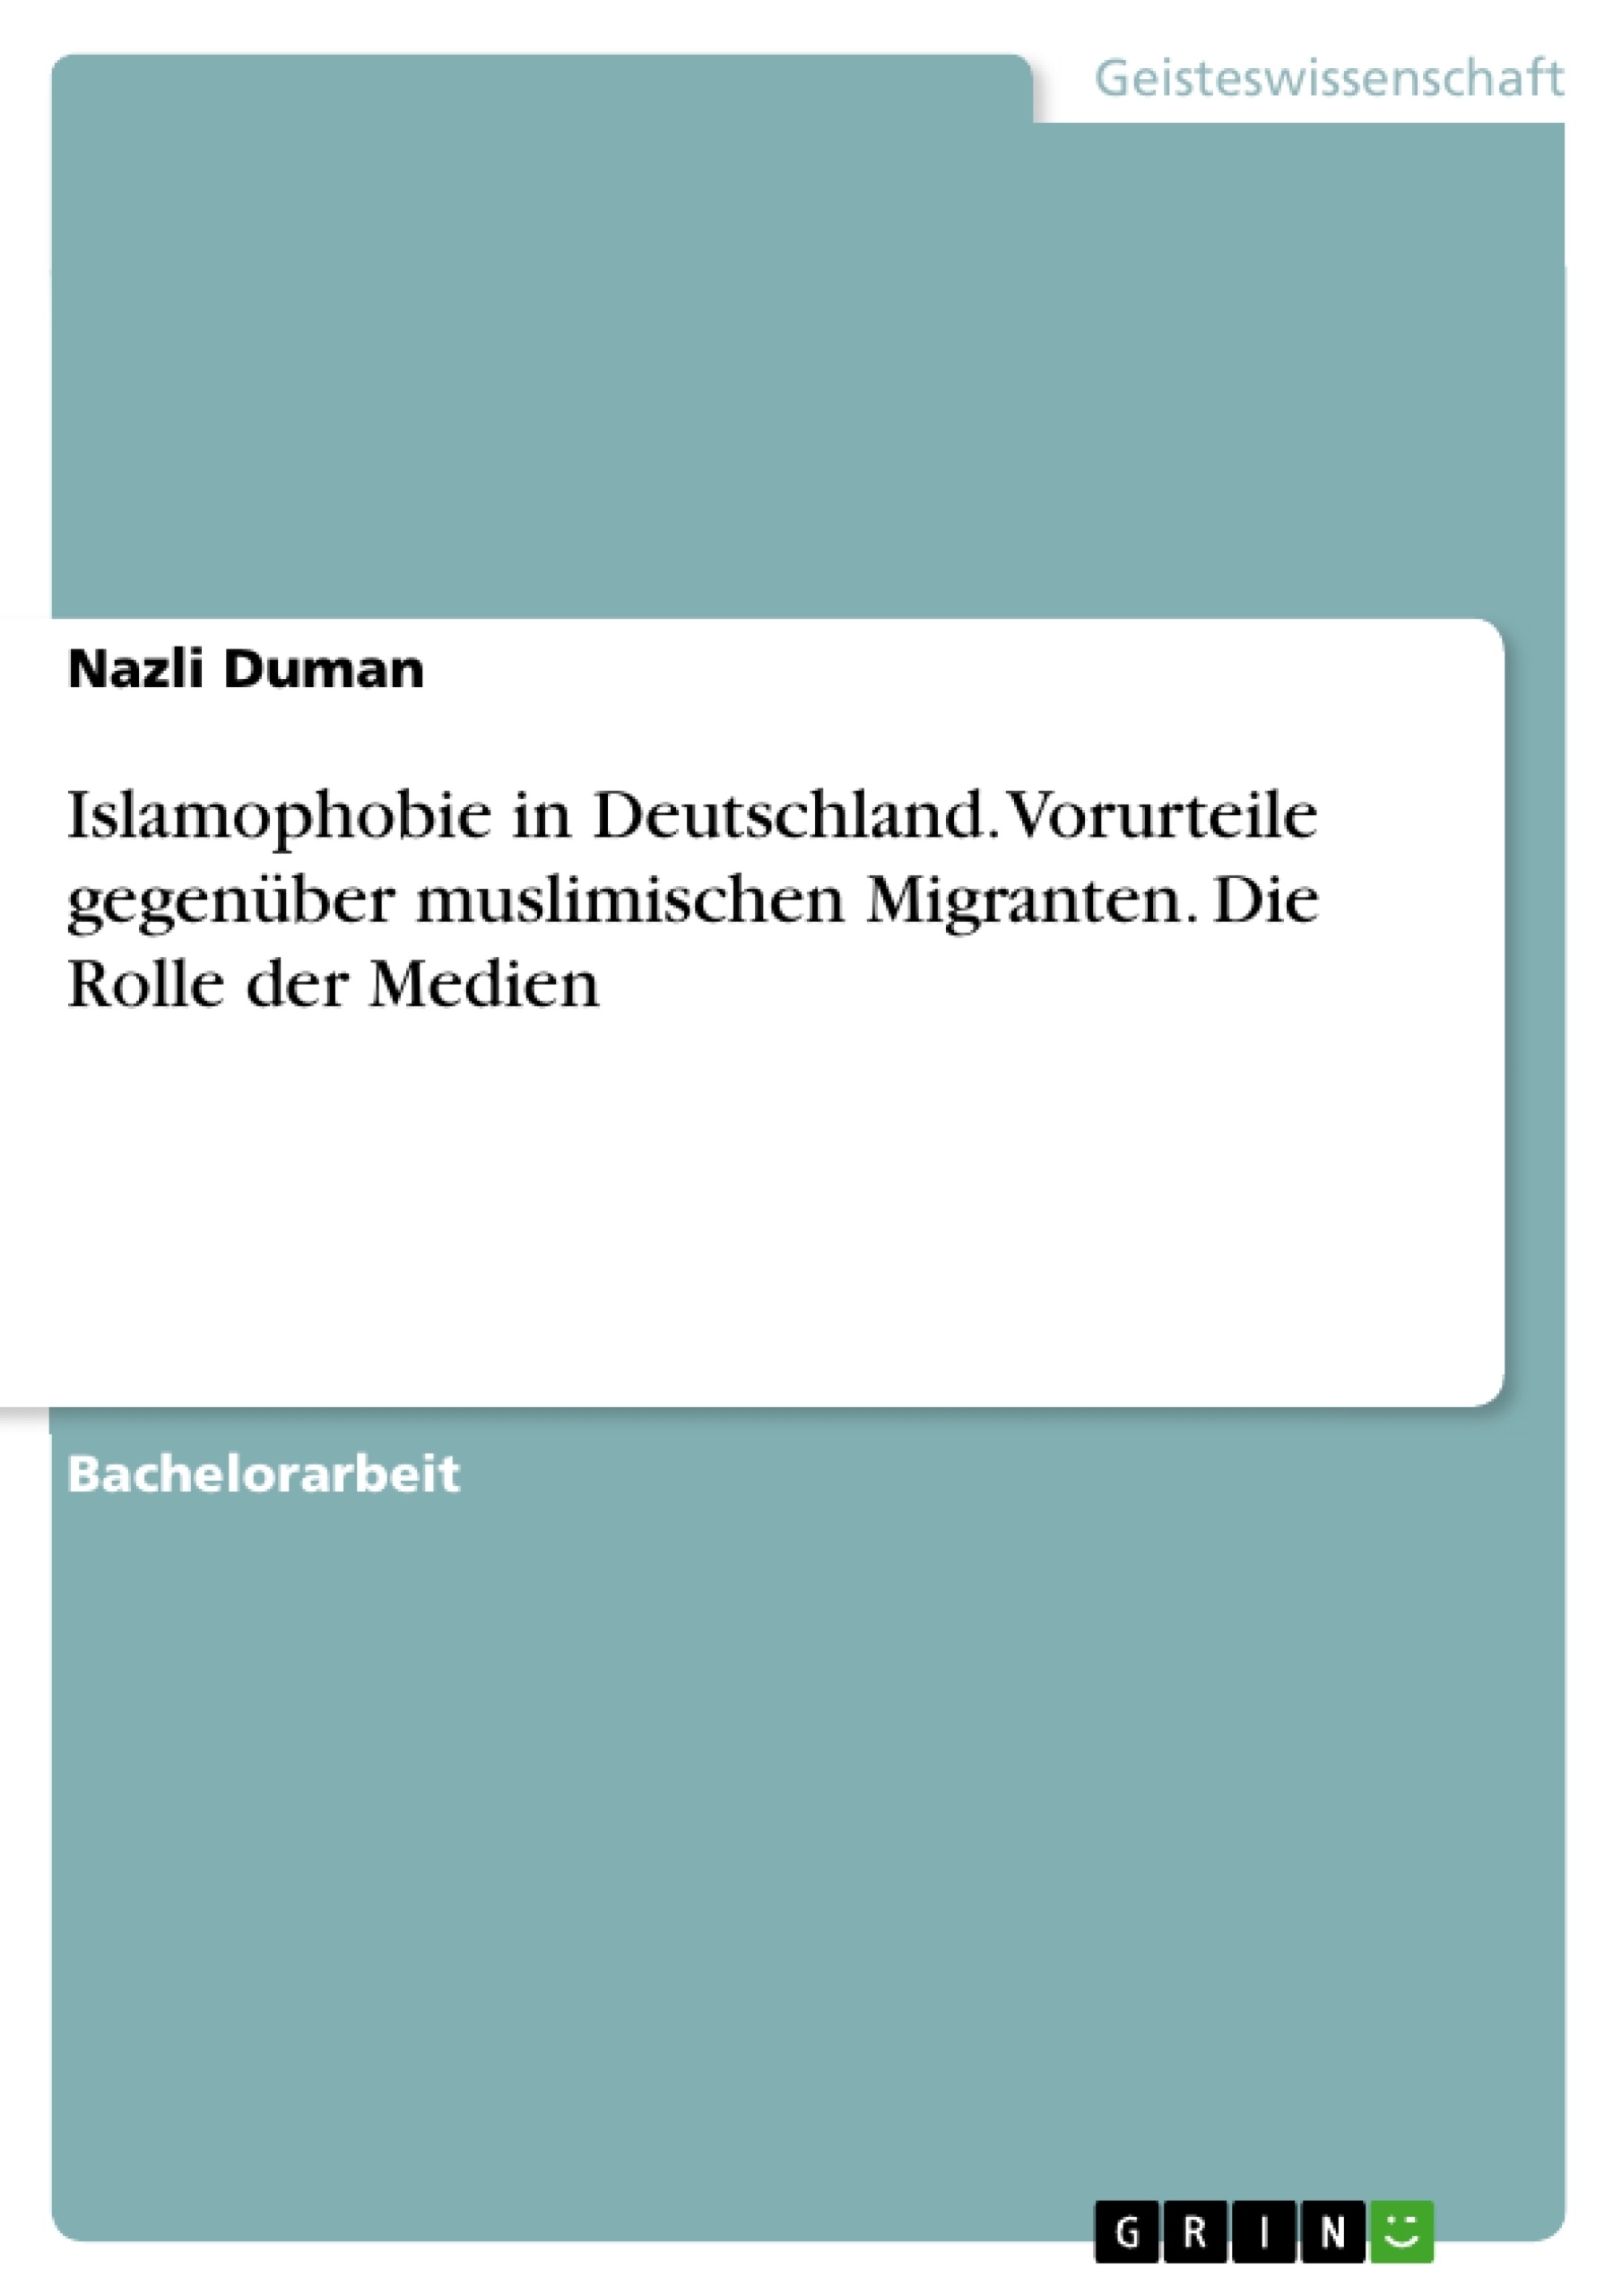 Titel: Islamophobie in Deutschland. Vorurteile gegenüber muslimischen Migranten. Die Rolle der Medien